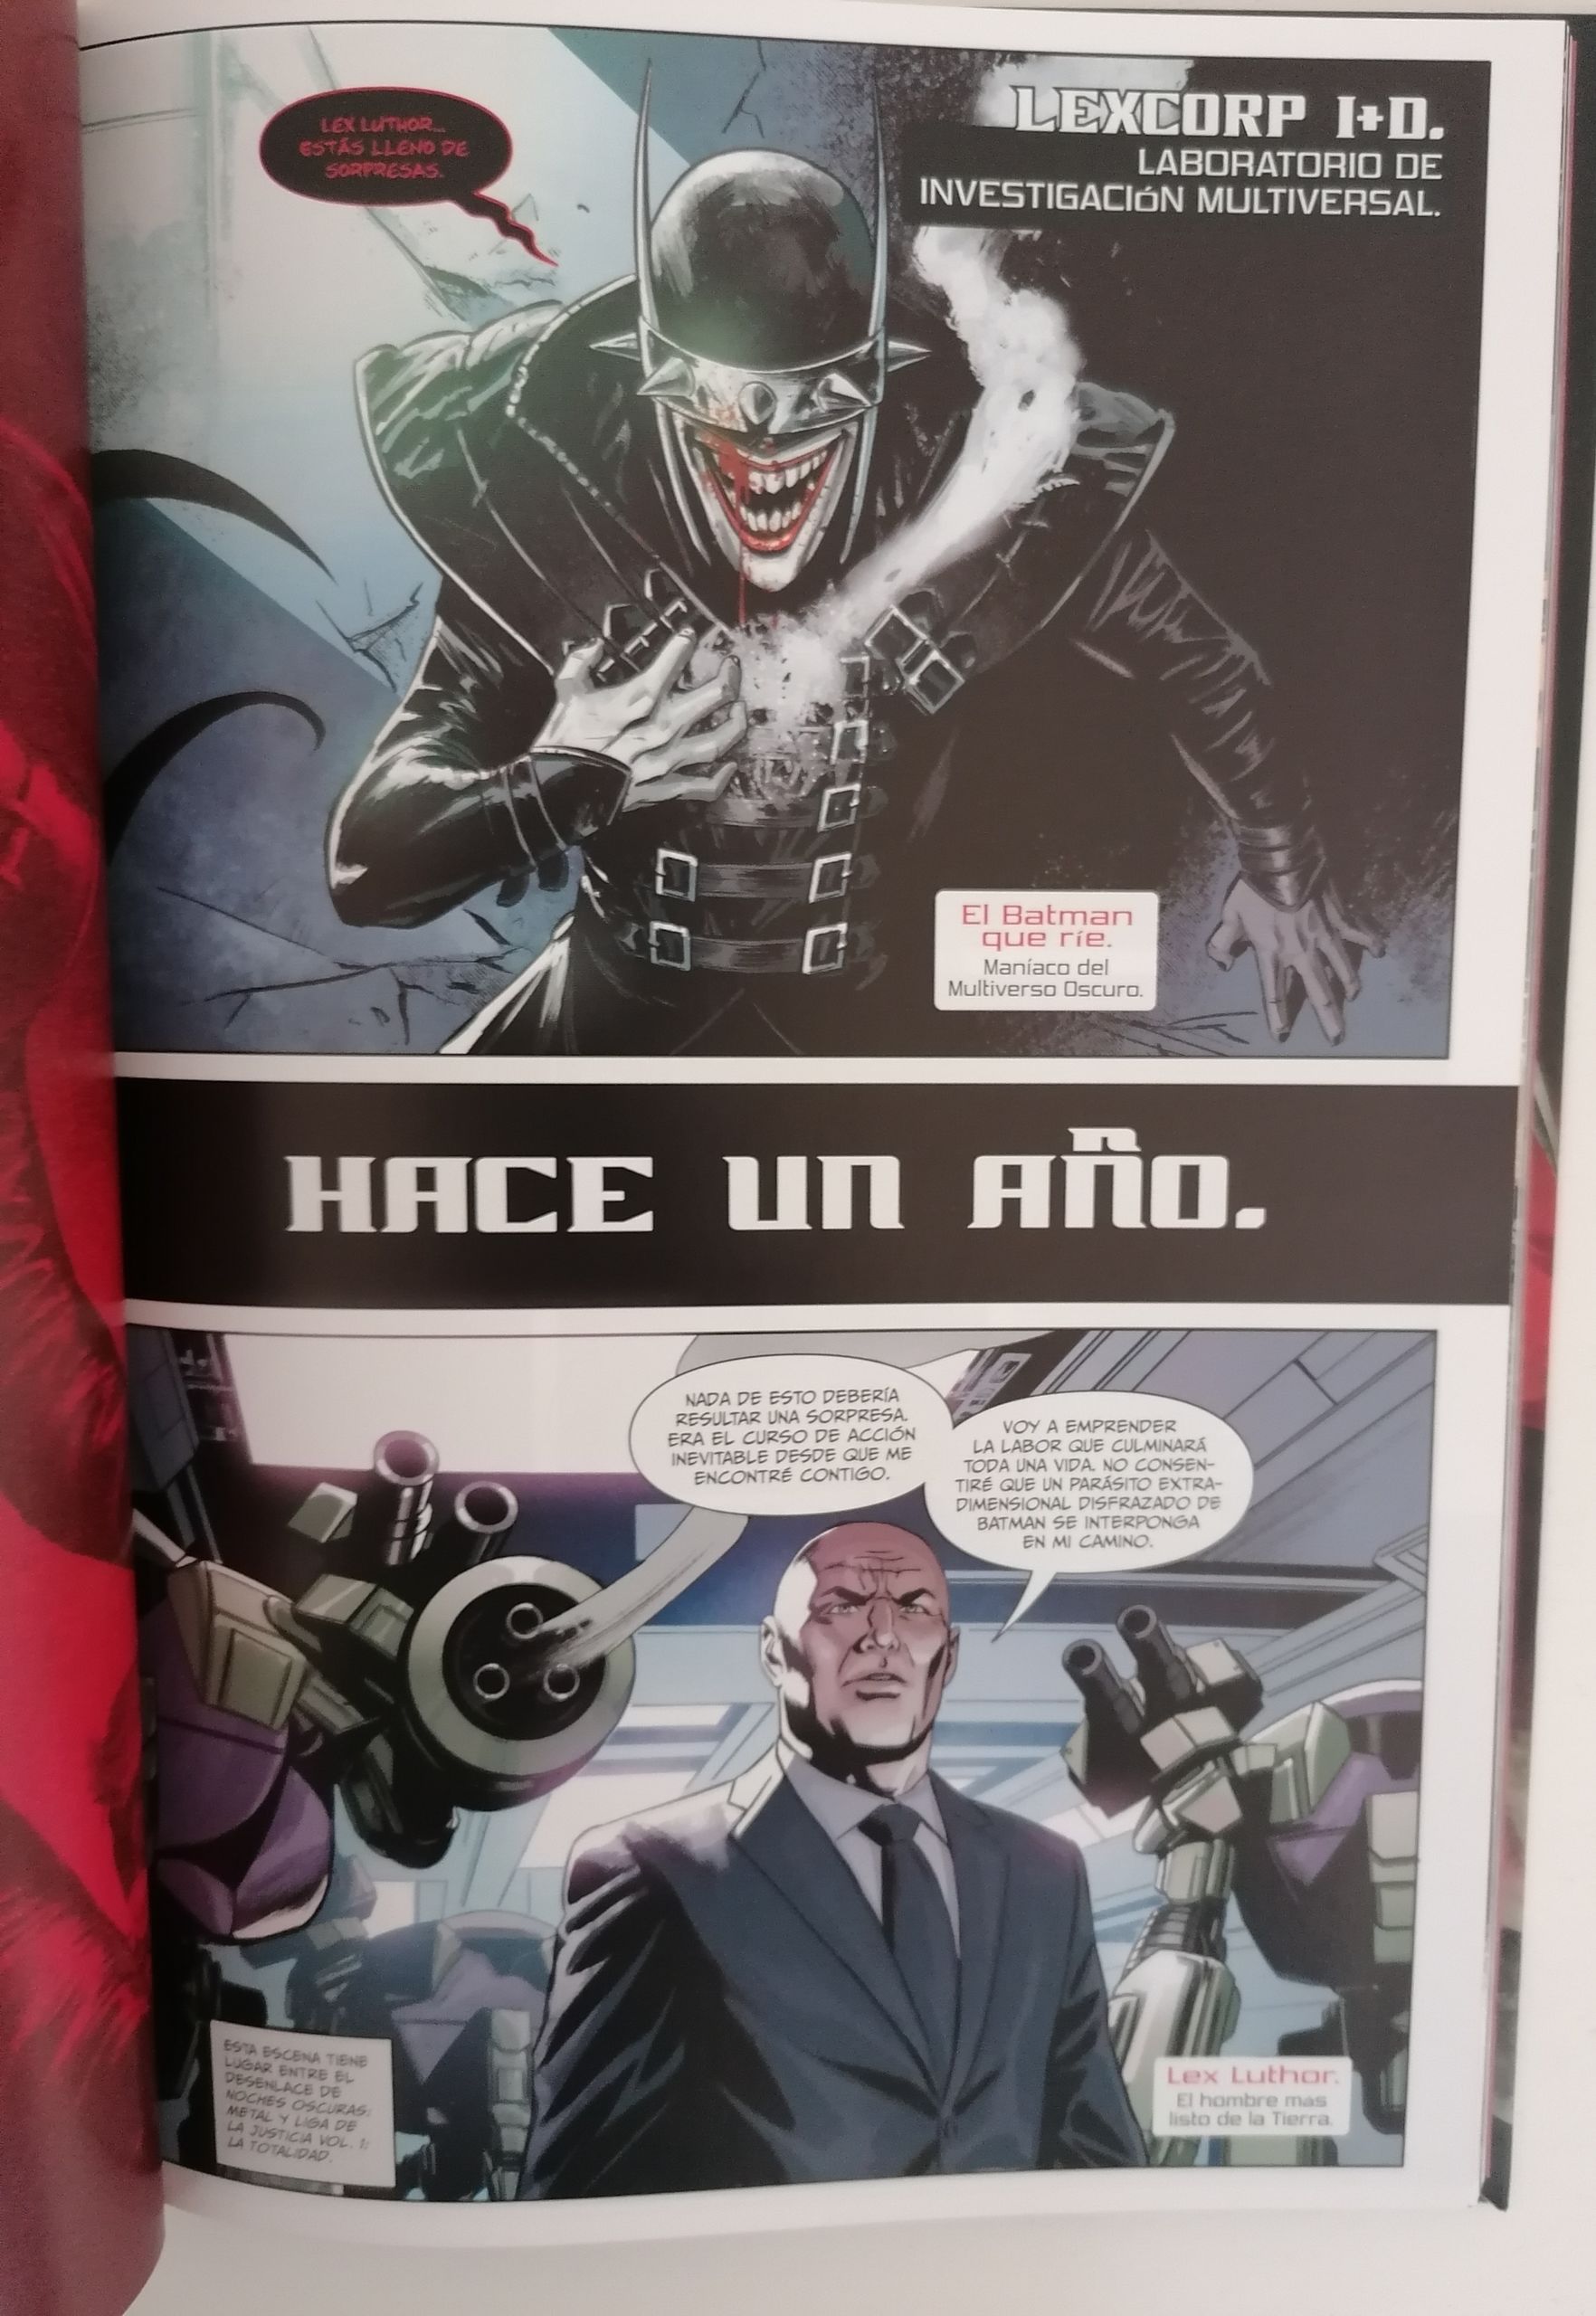 Lex Luthor vs el Batman que ríe en un cómic bizarro y oscuro